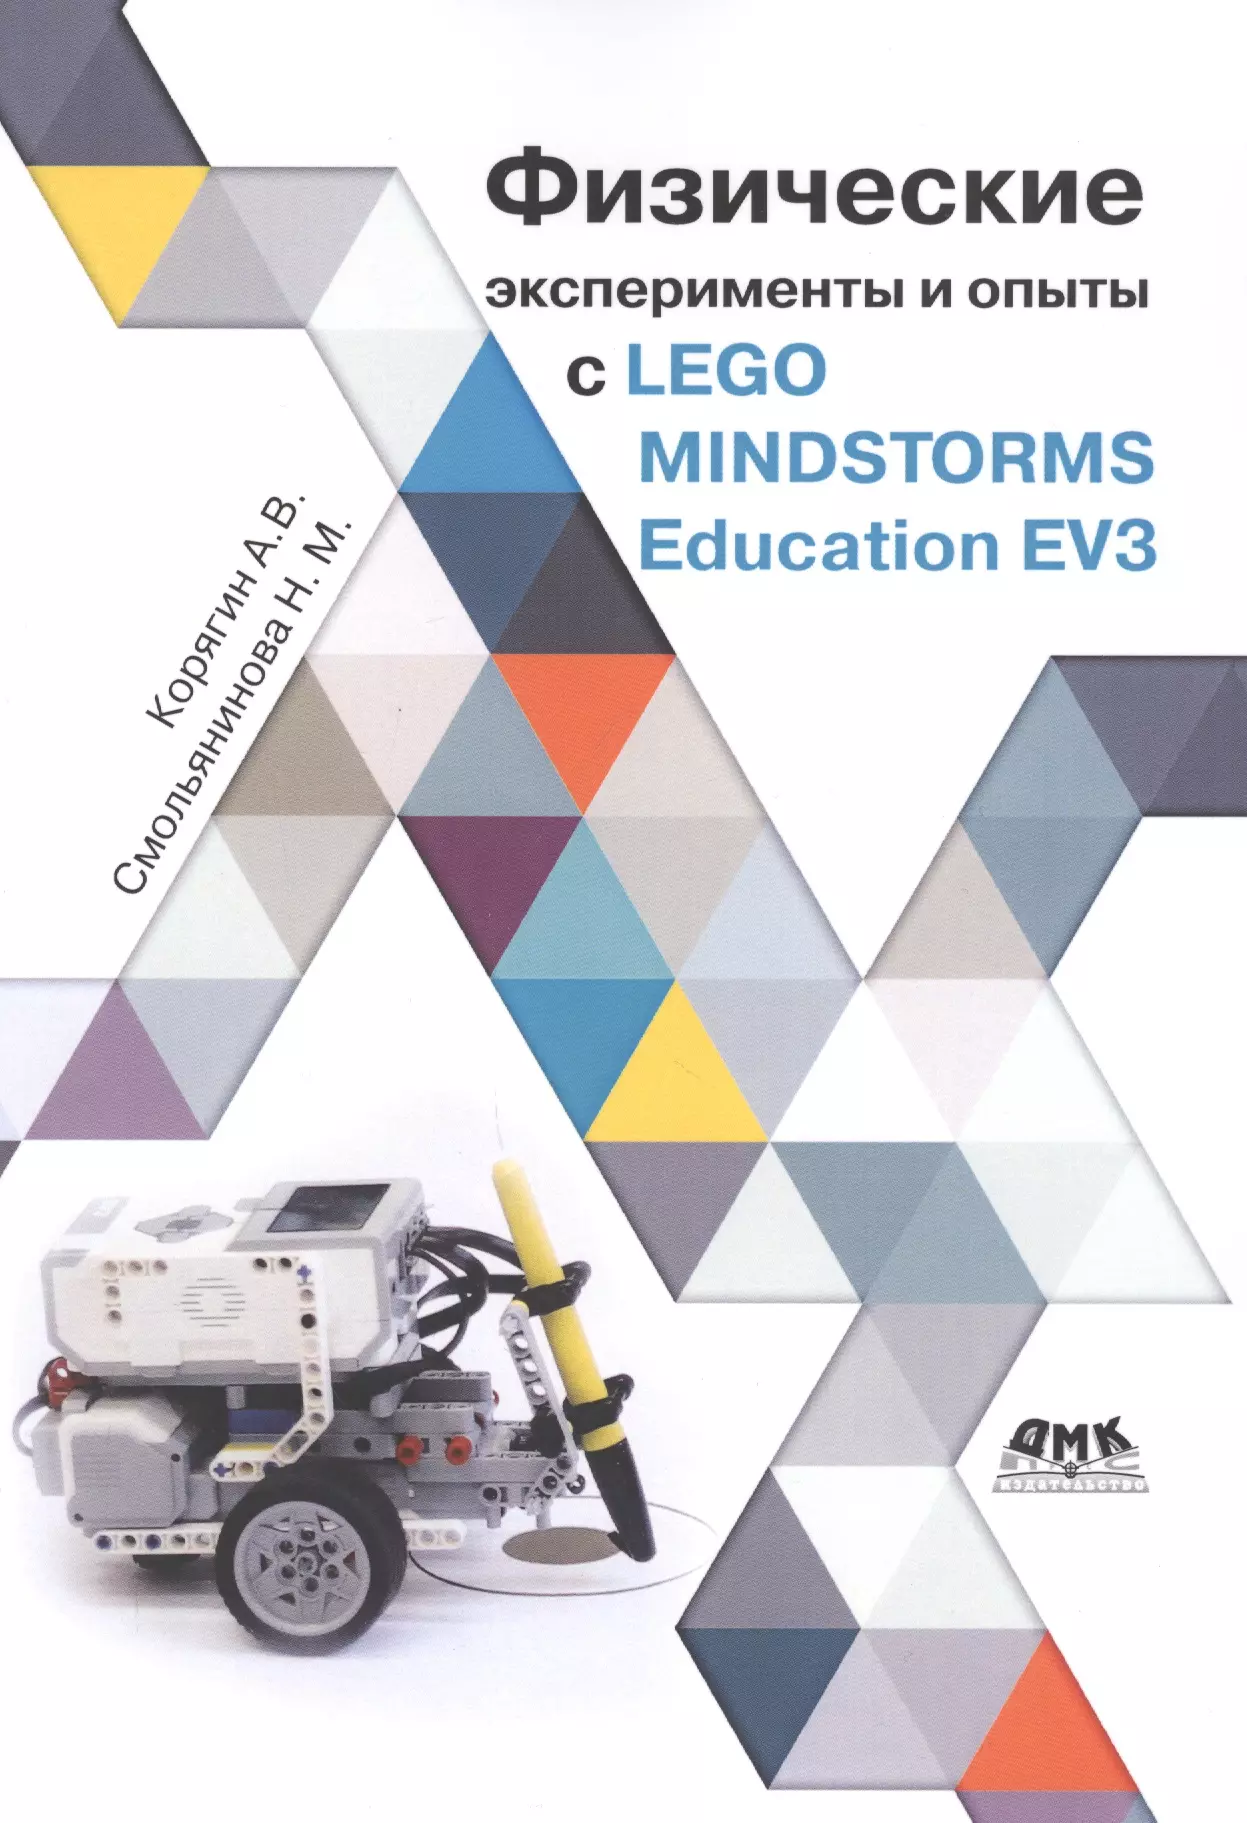 Корягин Андрей Владимирович - Физические эксперименты и опыты с LEGO MINDSTORMS Education EV3